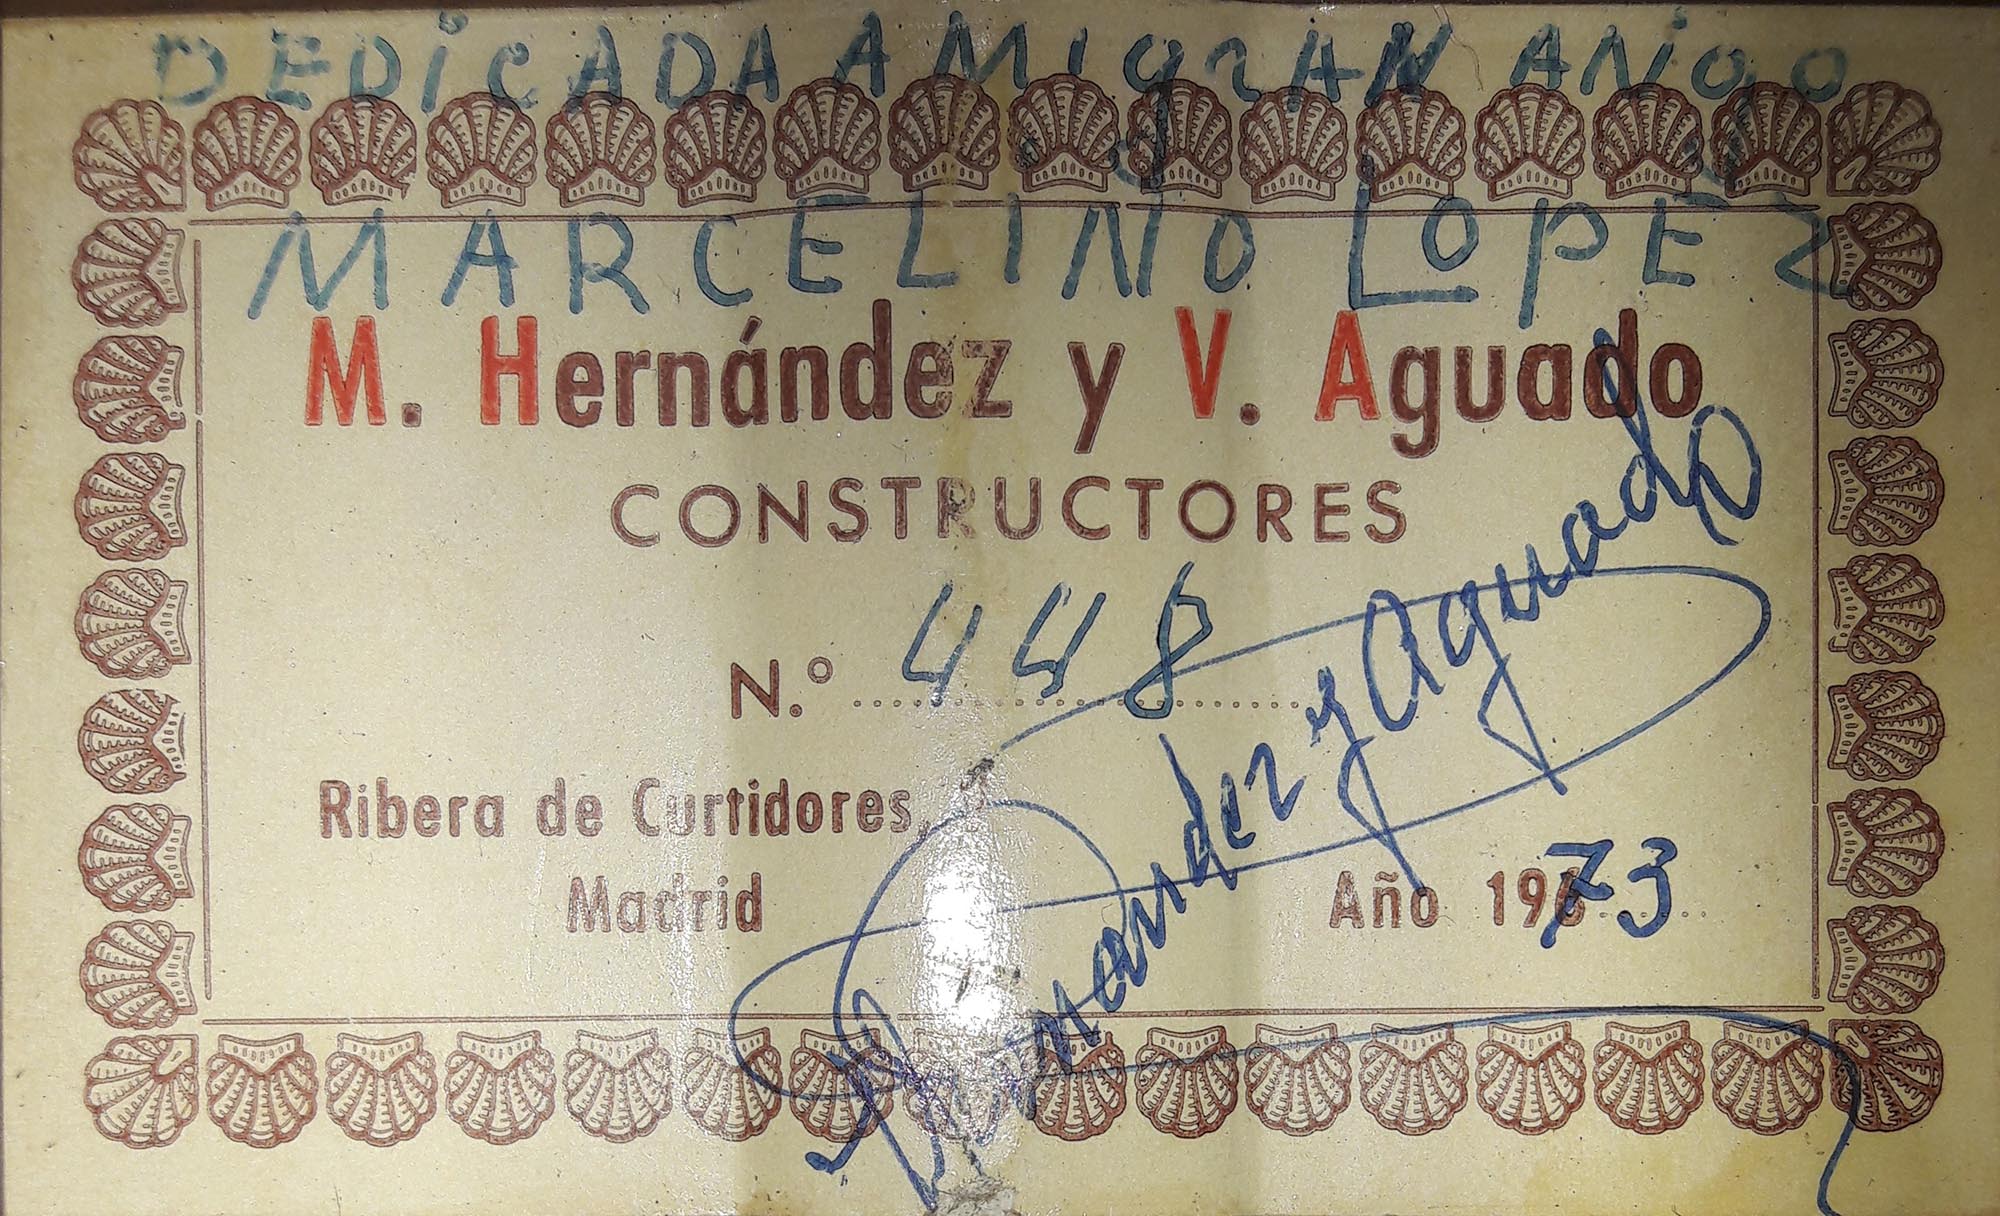 a hernandezyaguado 1973 28112018 label